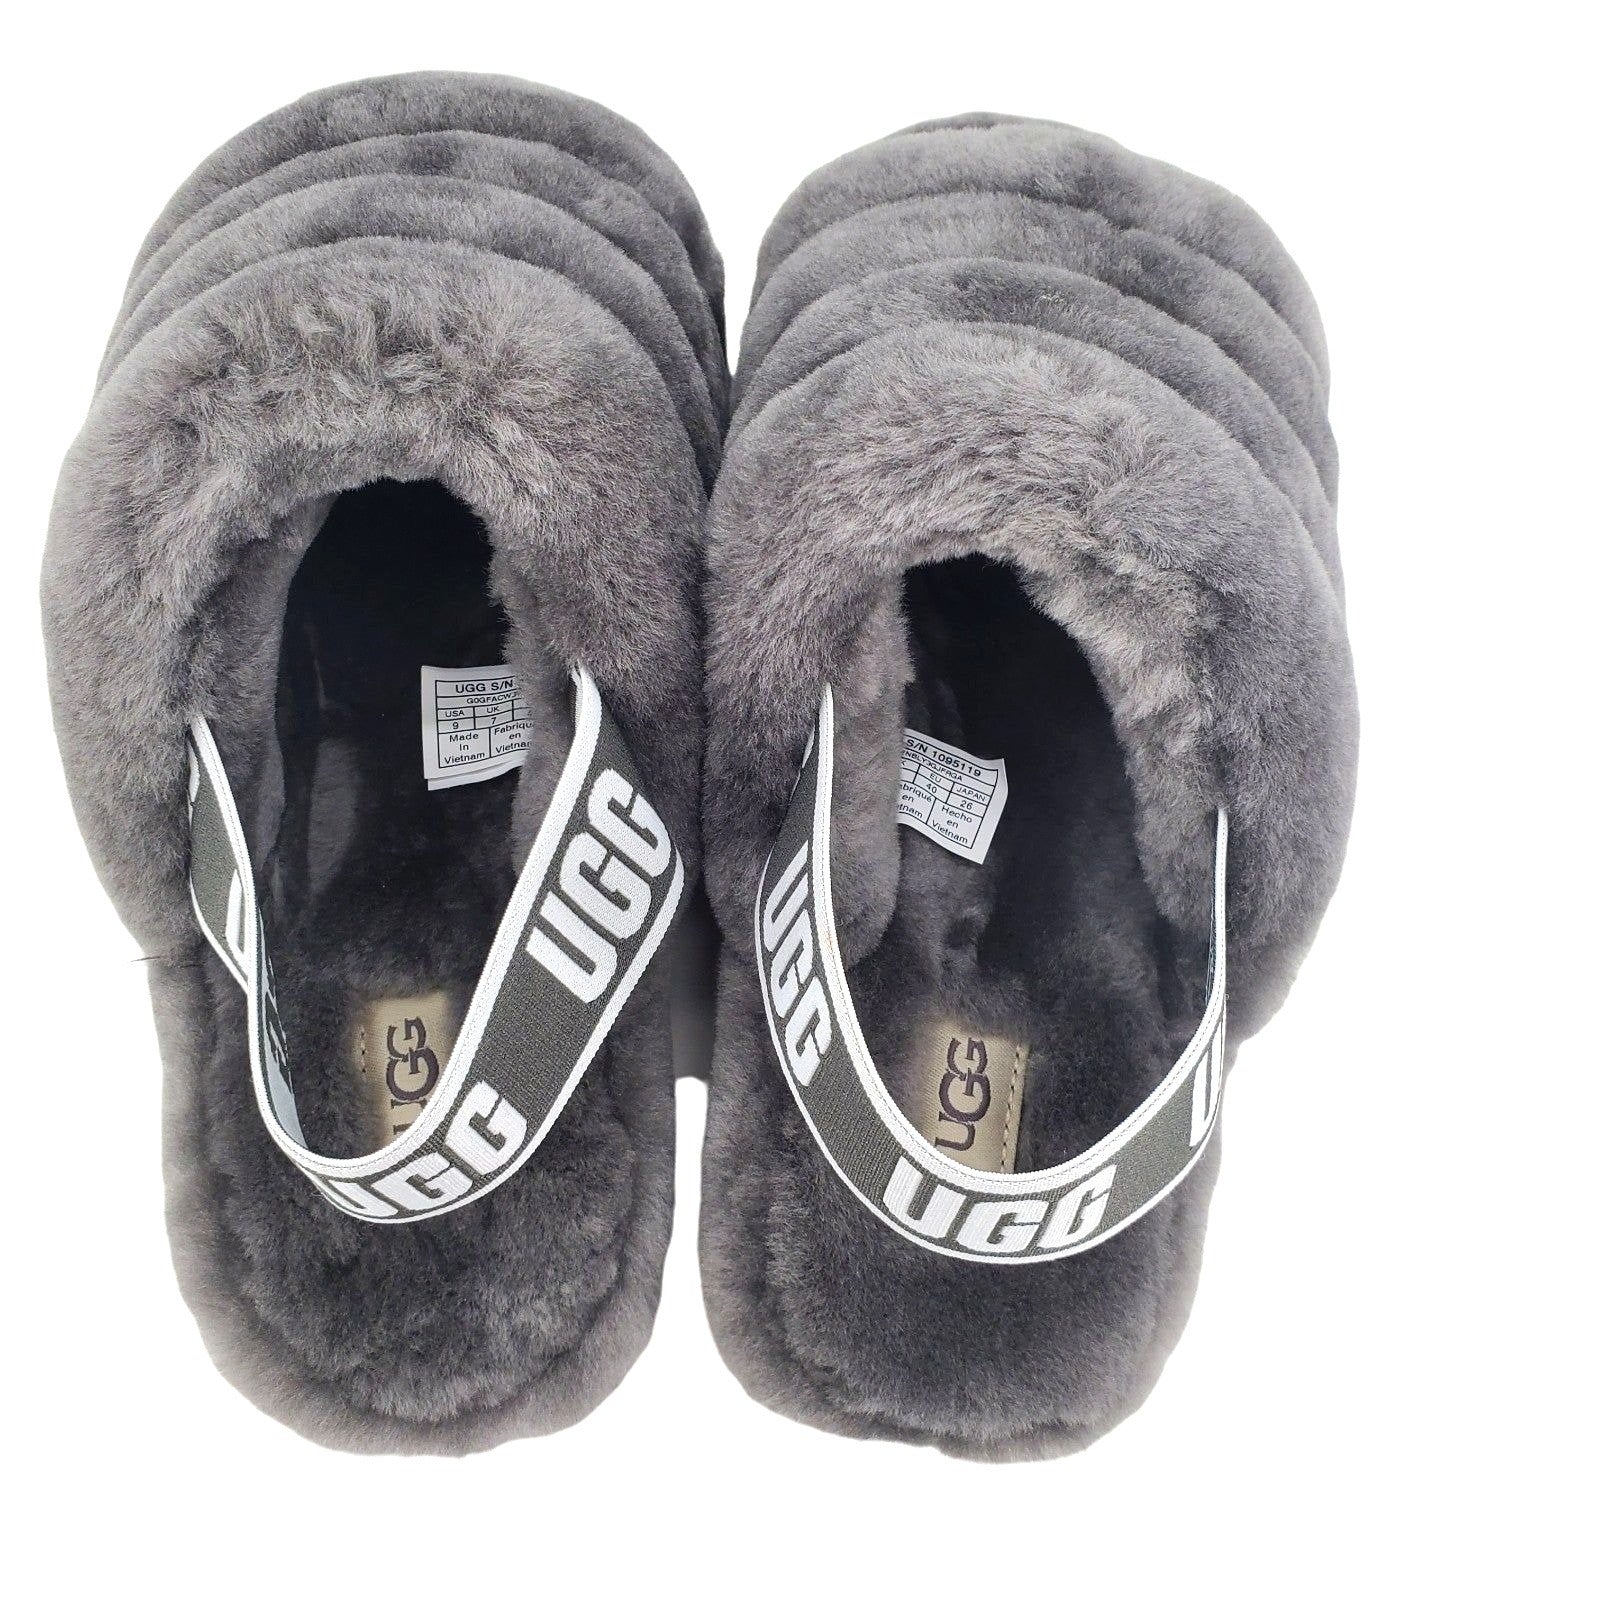 UGG Slides FLUFF YEAH SLIDE Fur Sandal Platform Slipper Shoes